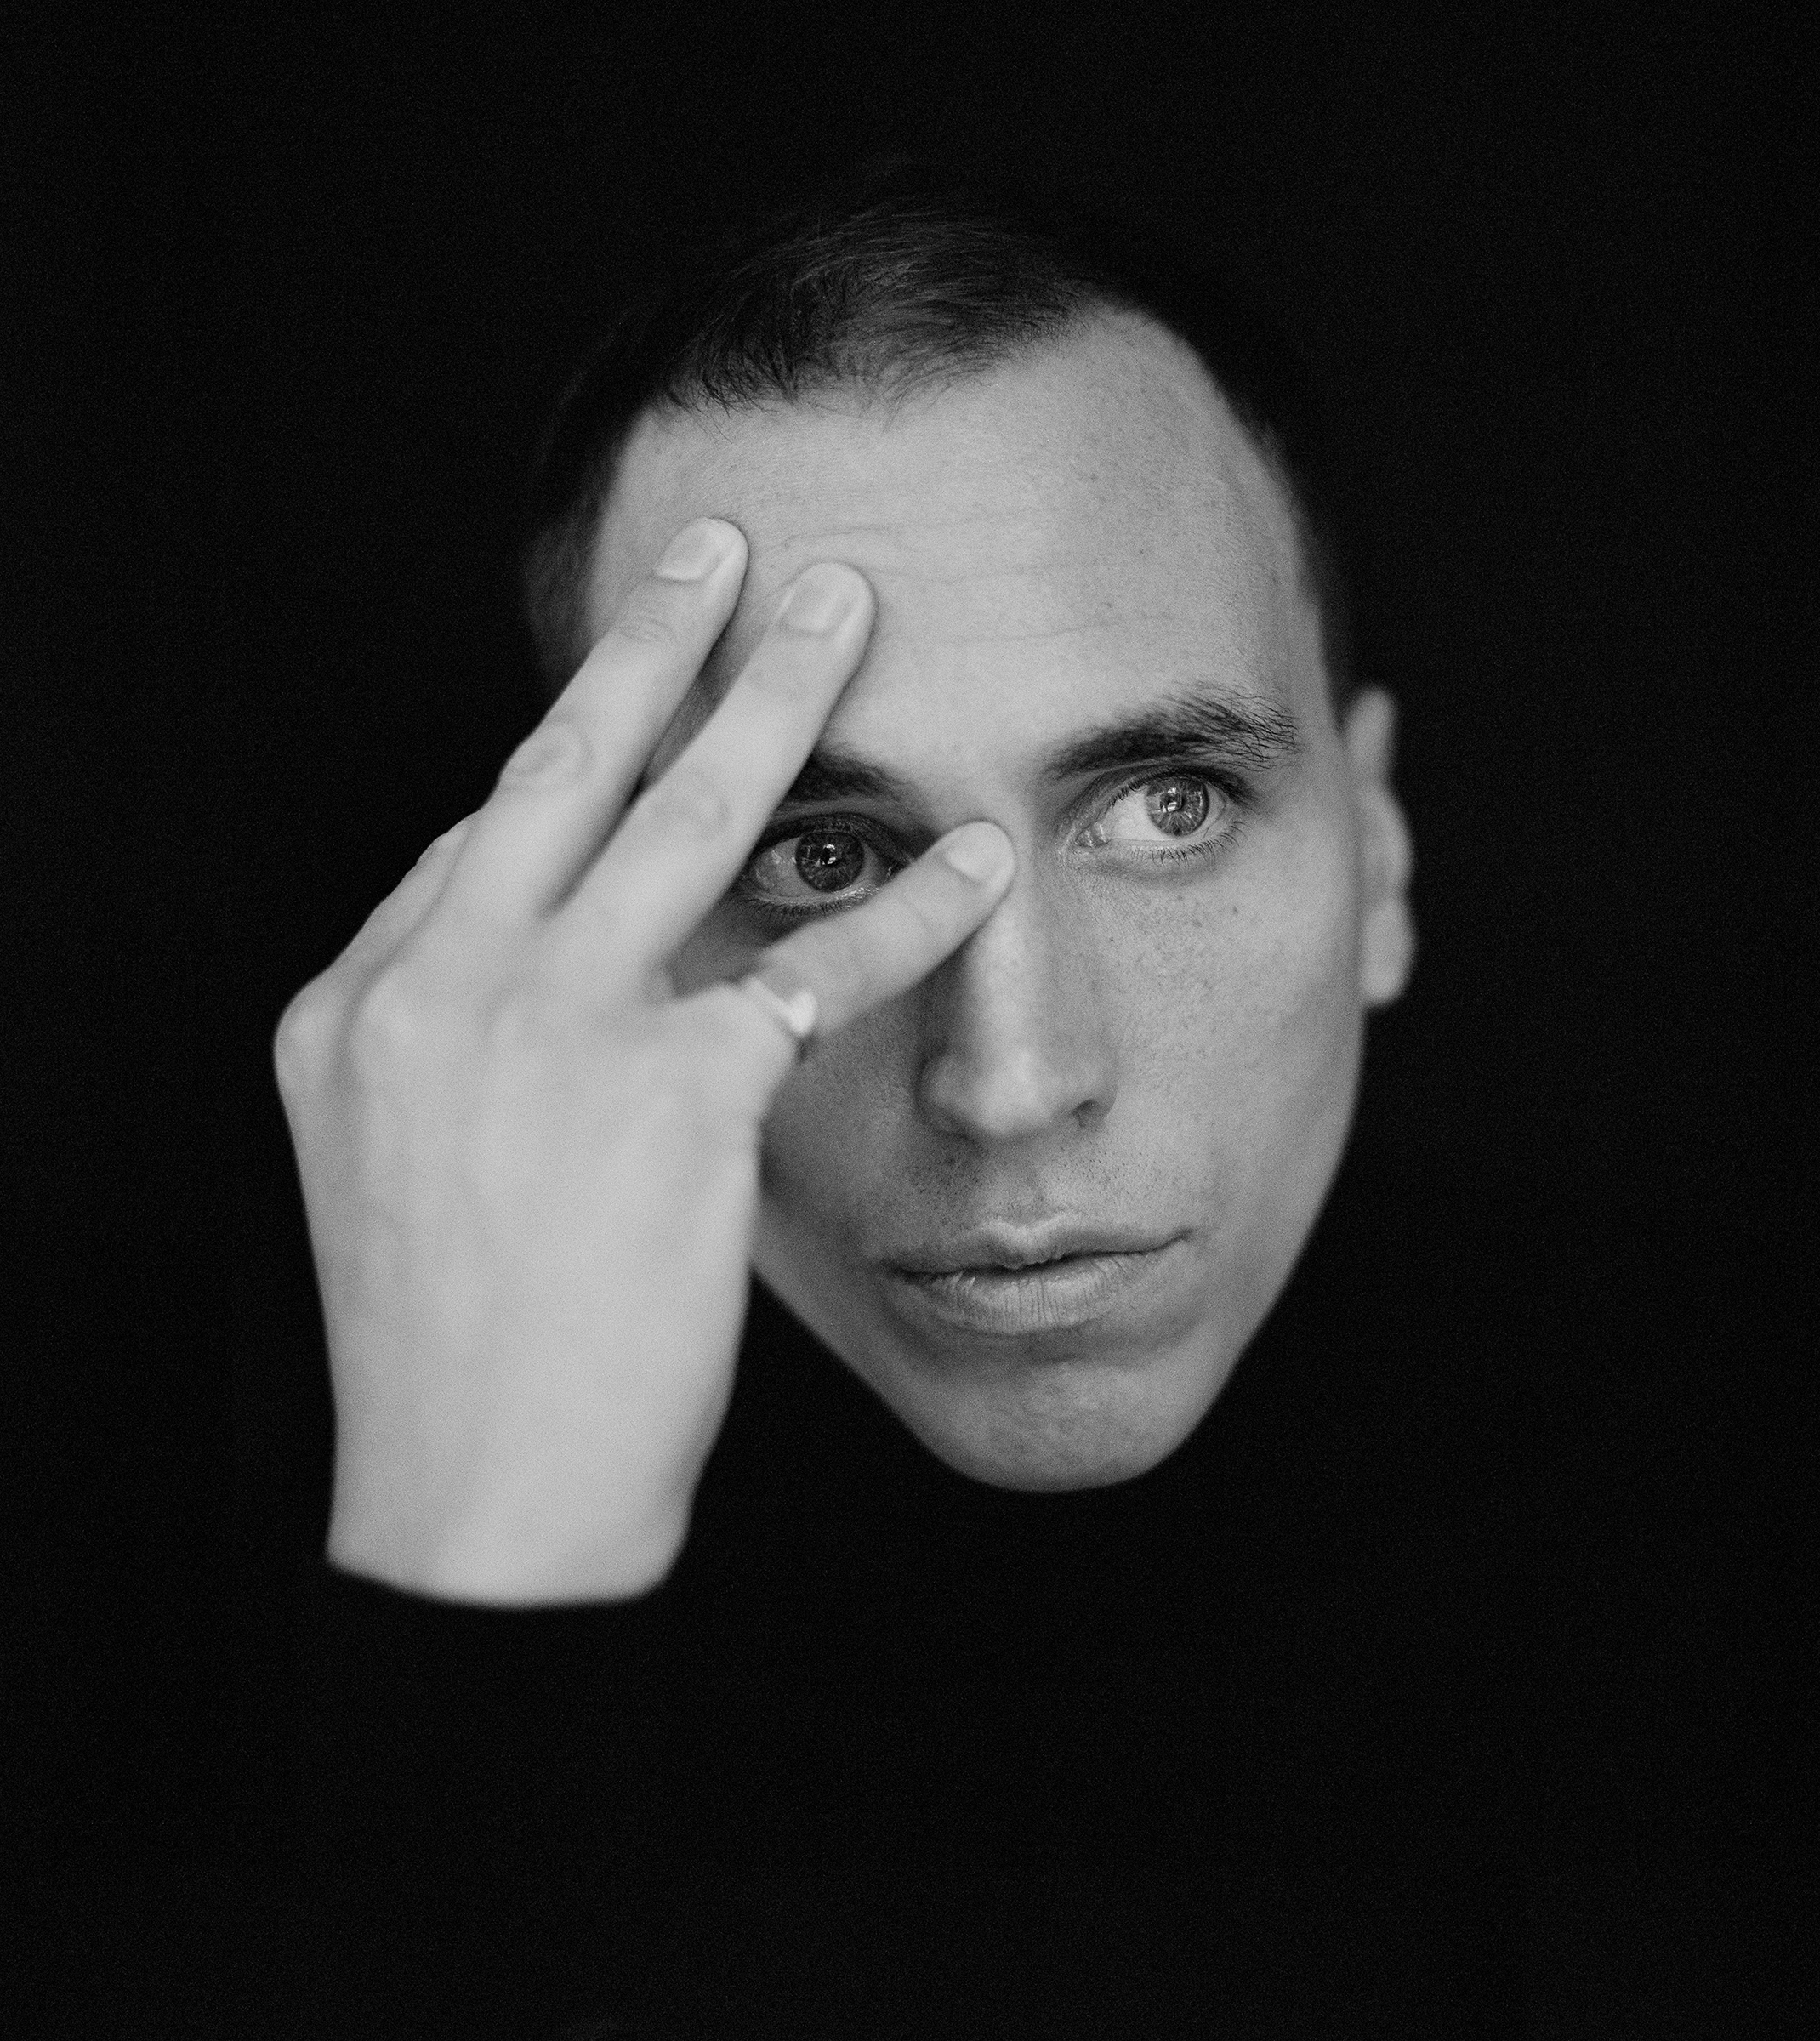 Schwarzweißes Portraitfoto von Martin Kohlstedt. Man sieht nur sein Gesicht sowie die rechte Hand, die er sich an die Stirn hält und damit Teile seines Gesichts halb verdeckt.